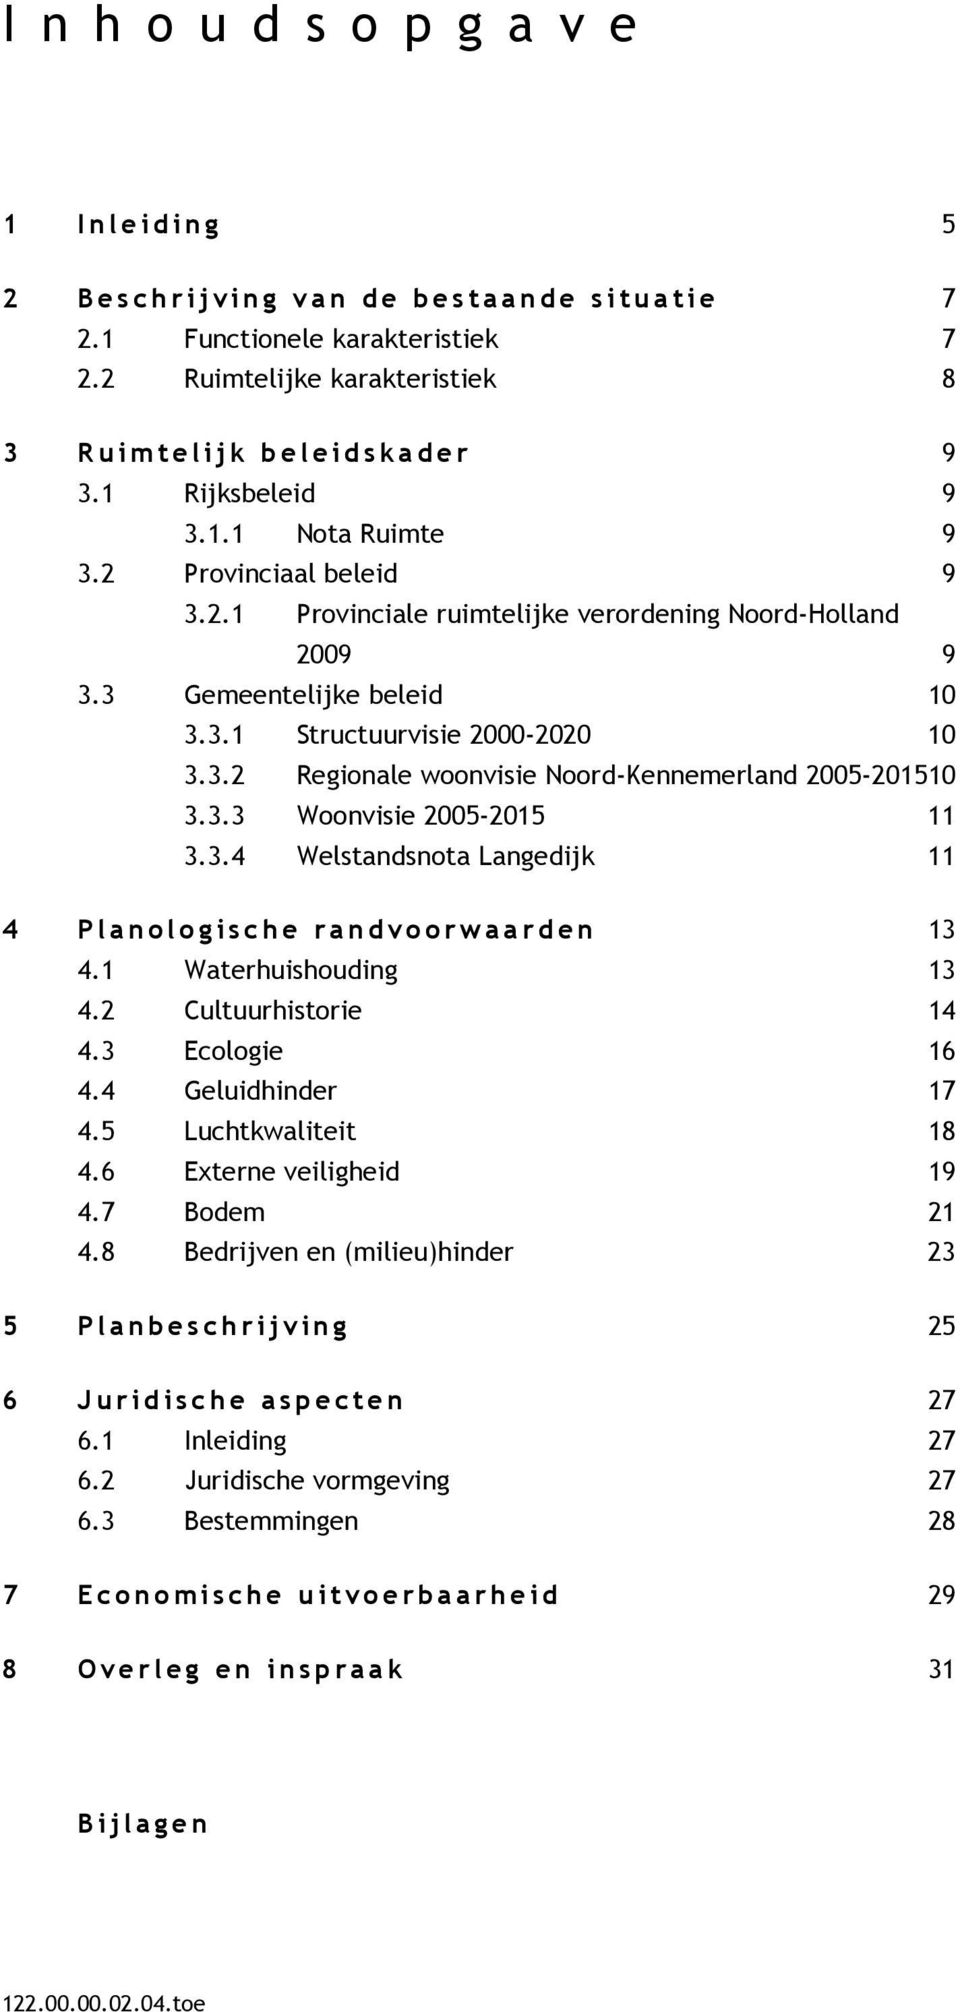 3 Gemeentelijke beleid 10 3.3.1 Structuurvisie 2000-2020 10 3.3.2 Regionale woonvisie Noord-Kennemerland 2005-201510 3.3.3 Woonvisie 2005-2015 11 3.3.4 Welstandsnota Langedijk 11 4 P l a n o logische ra n d v o o r w a a r d en 13 4.